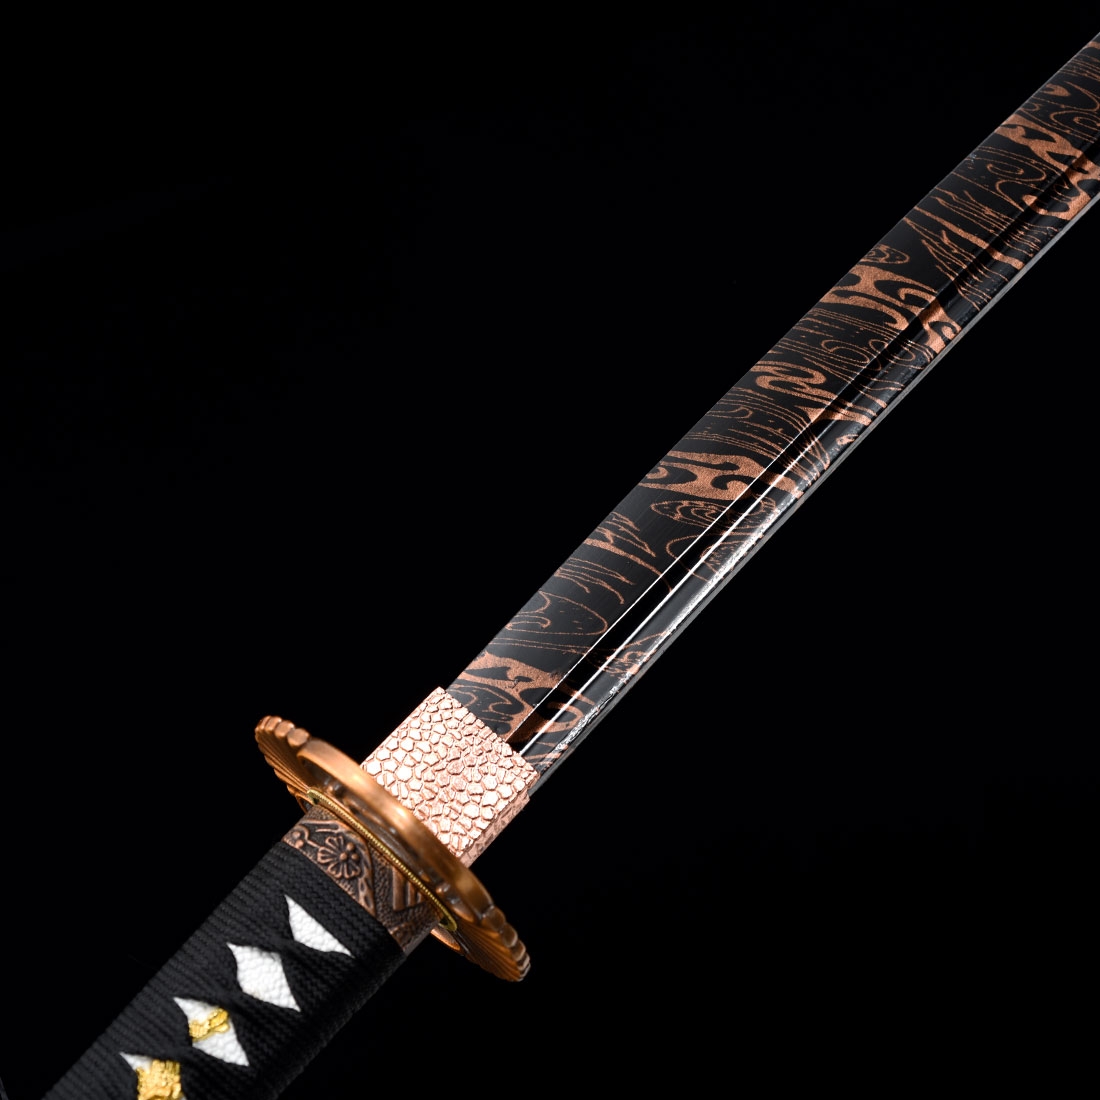 Sword of the Stranger Handmade 1045 Carbon Steel Movie Katana EM0069 -  Katanas